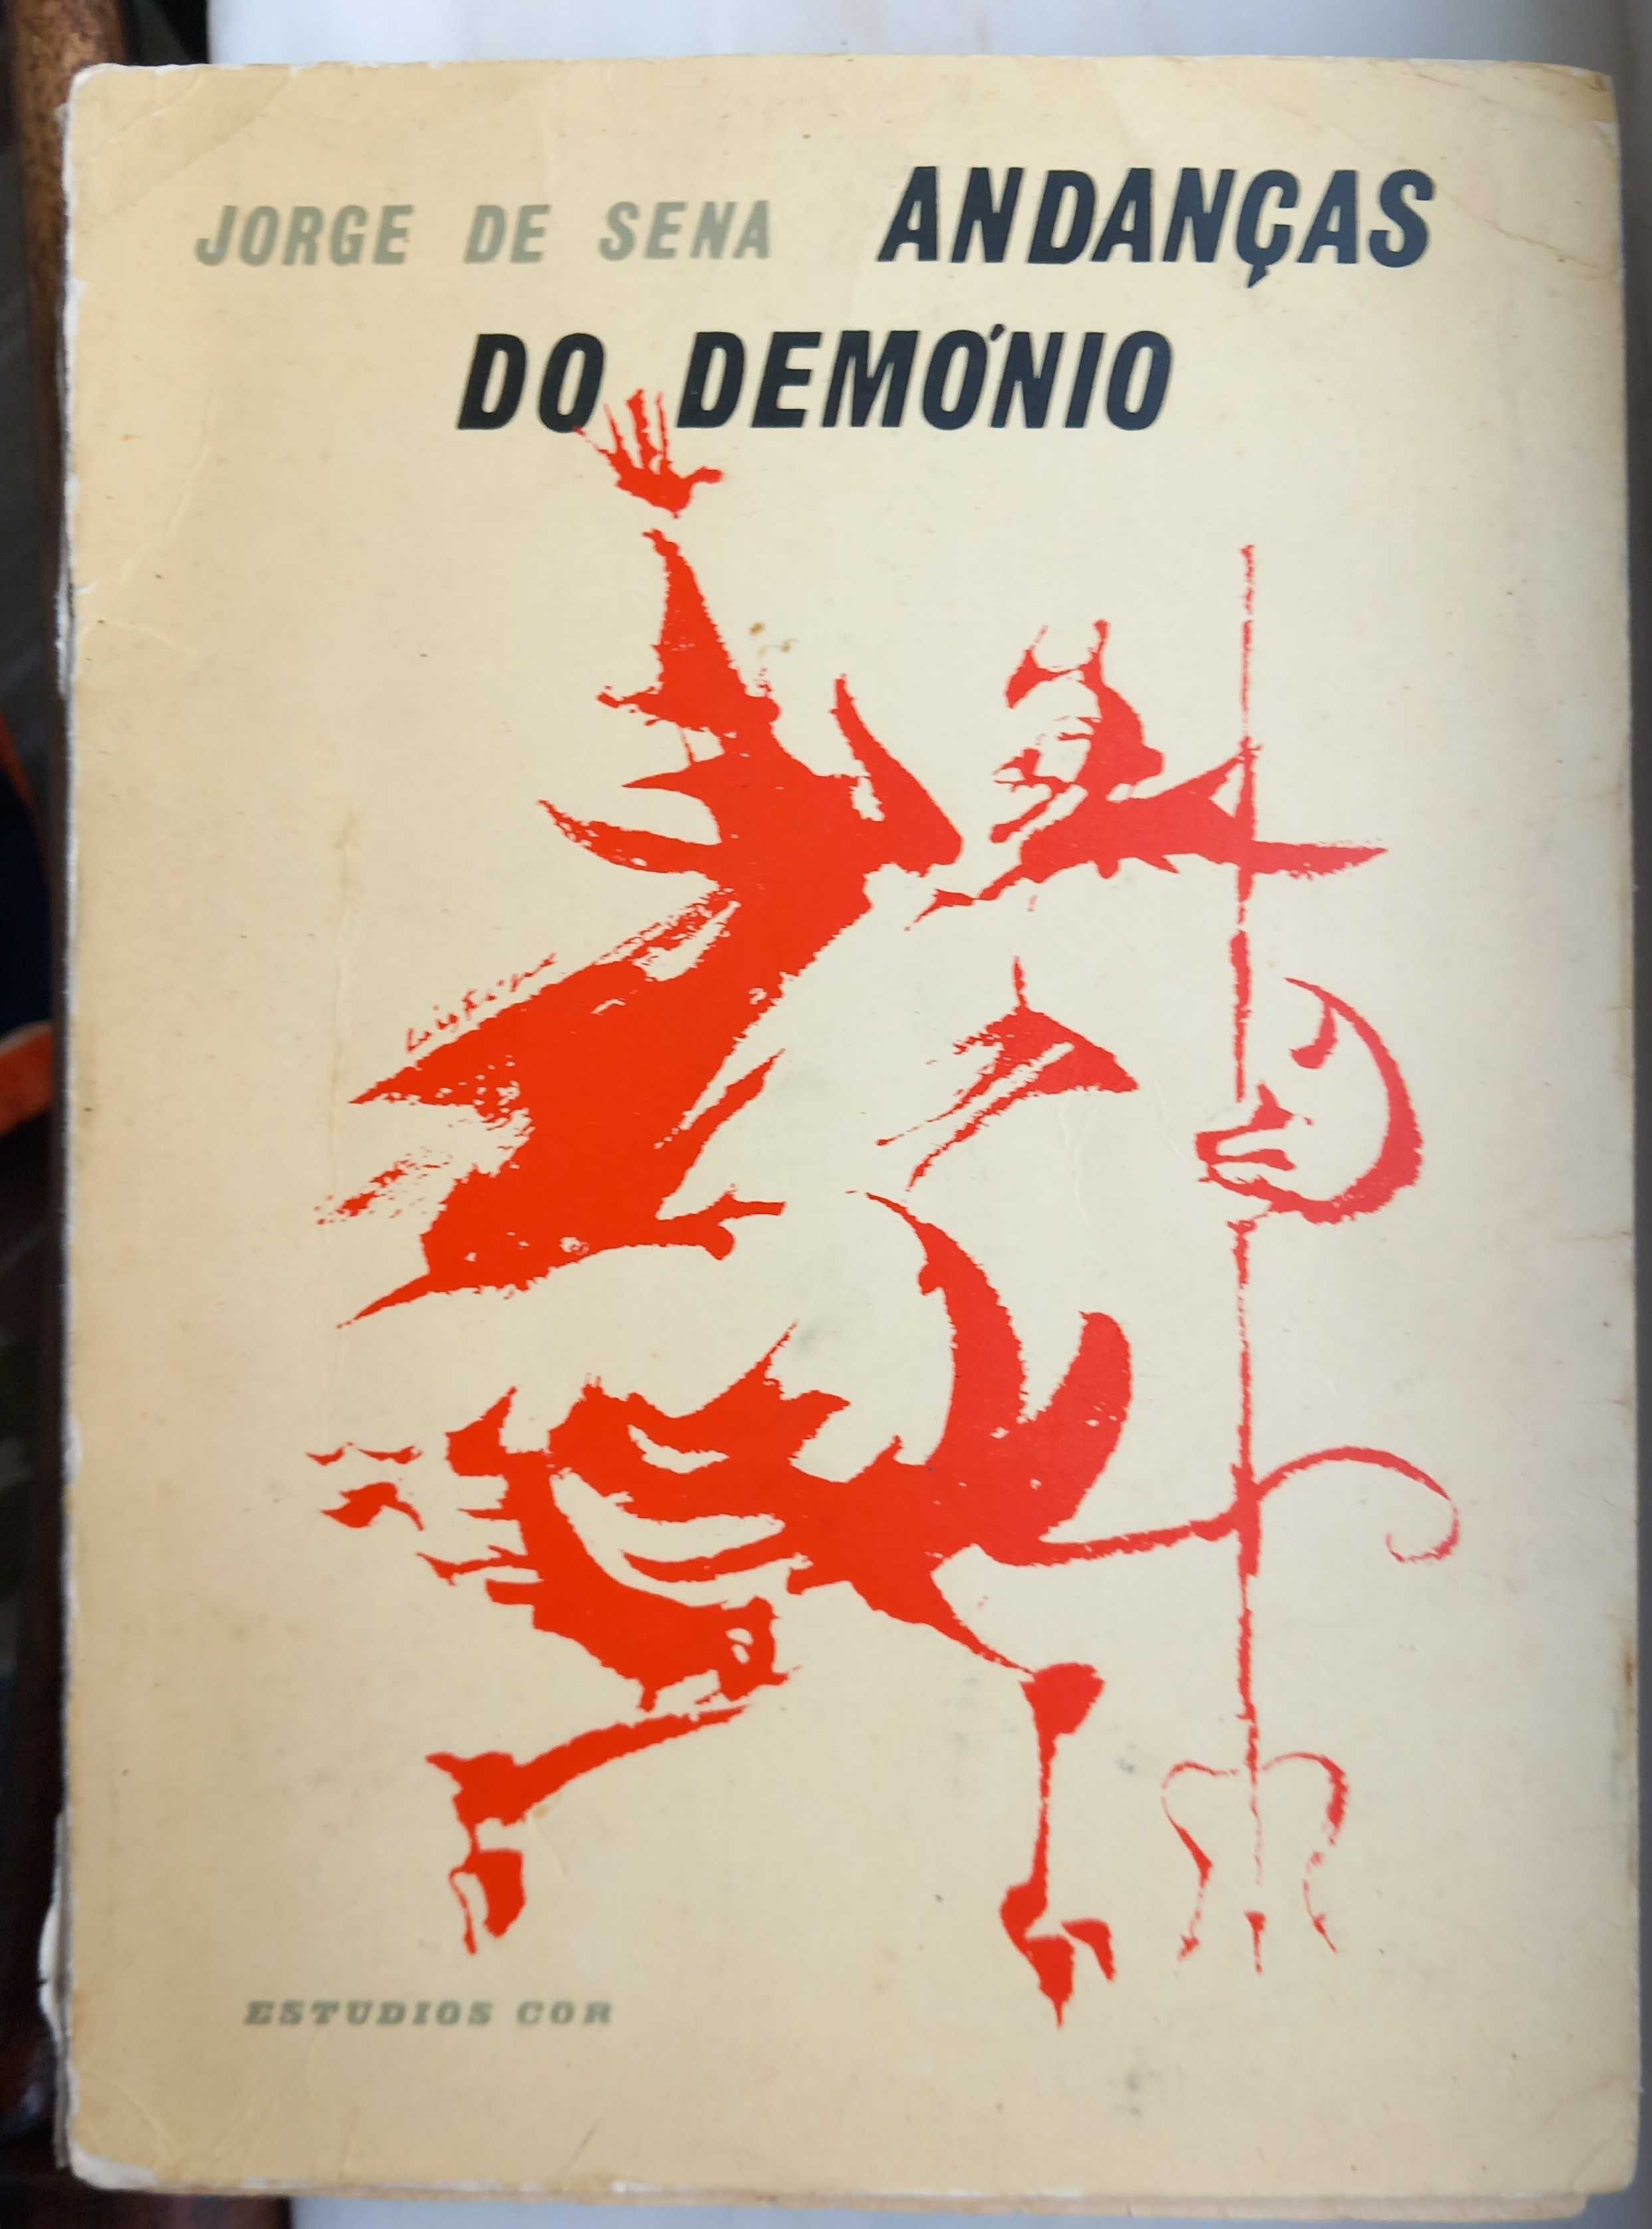 Jorge de Sena- Andanças do Demónio [Estúdios Cor; 1960; 1ª edição]